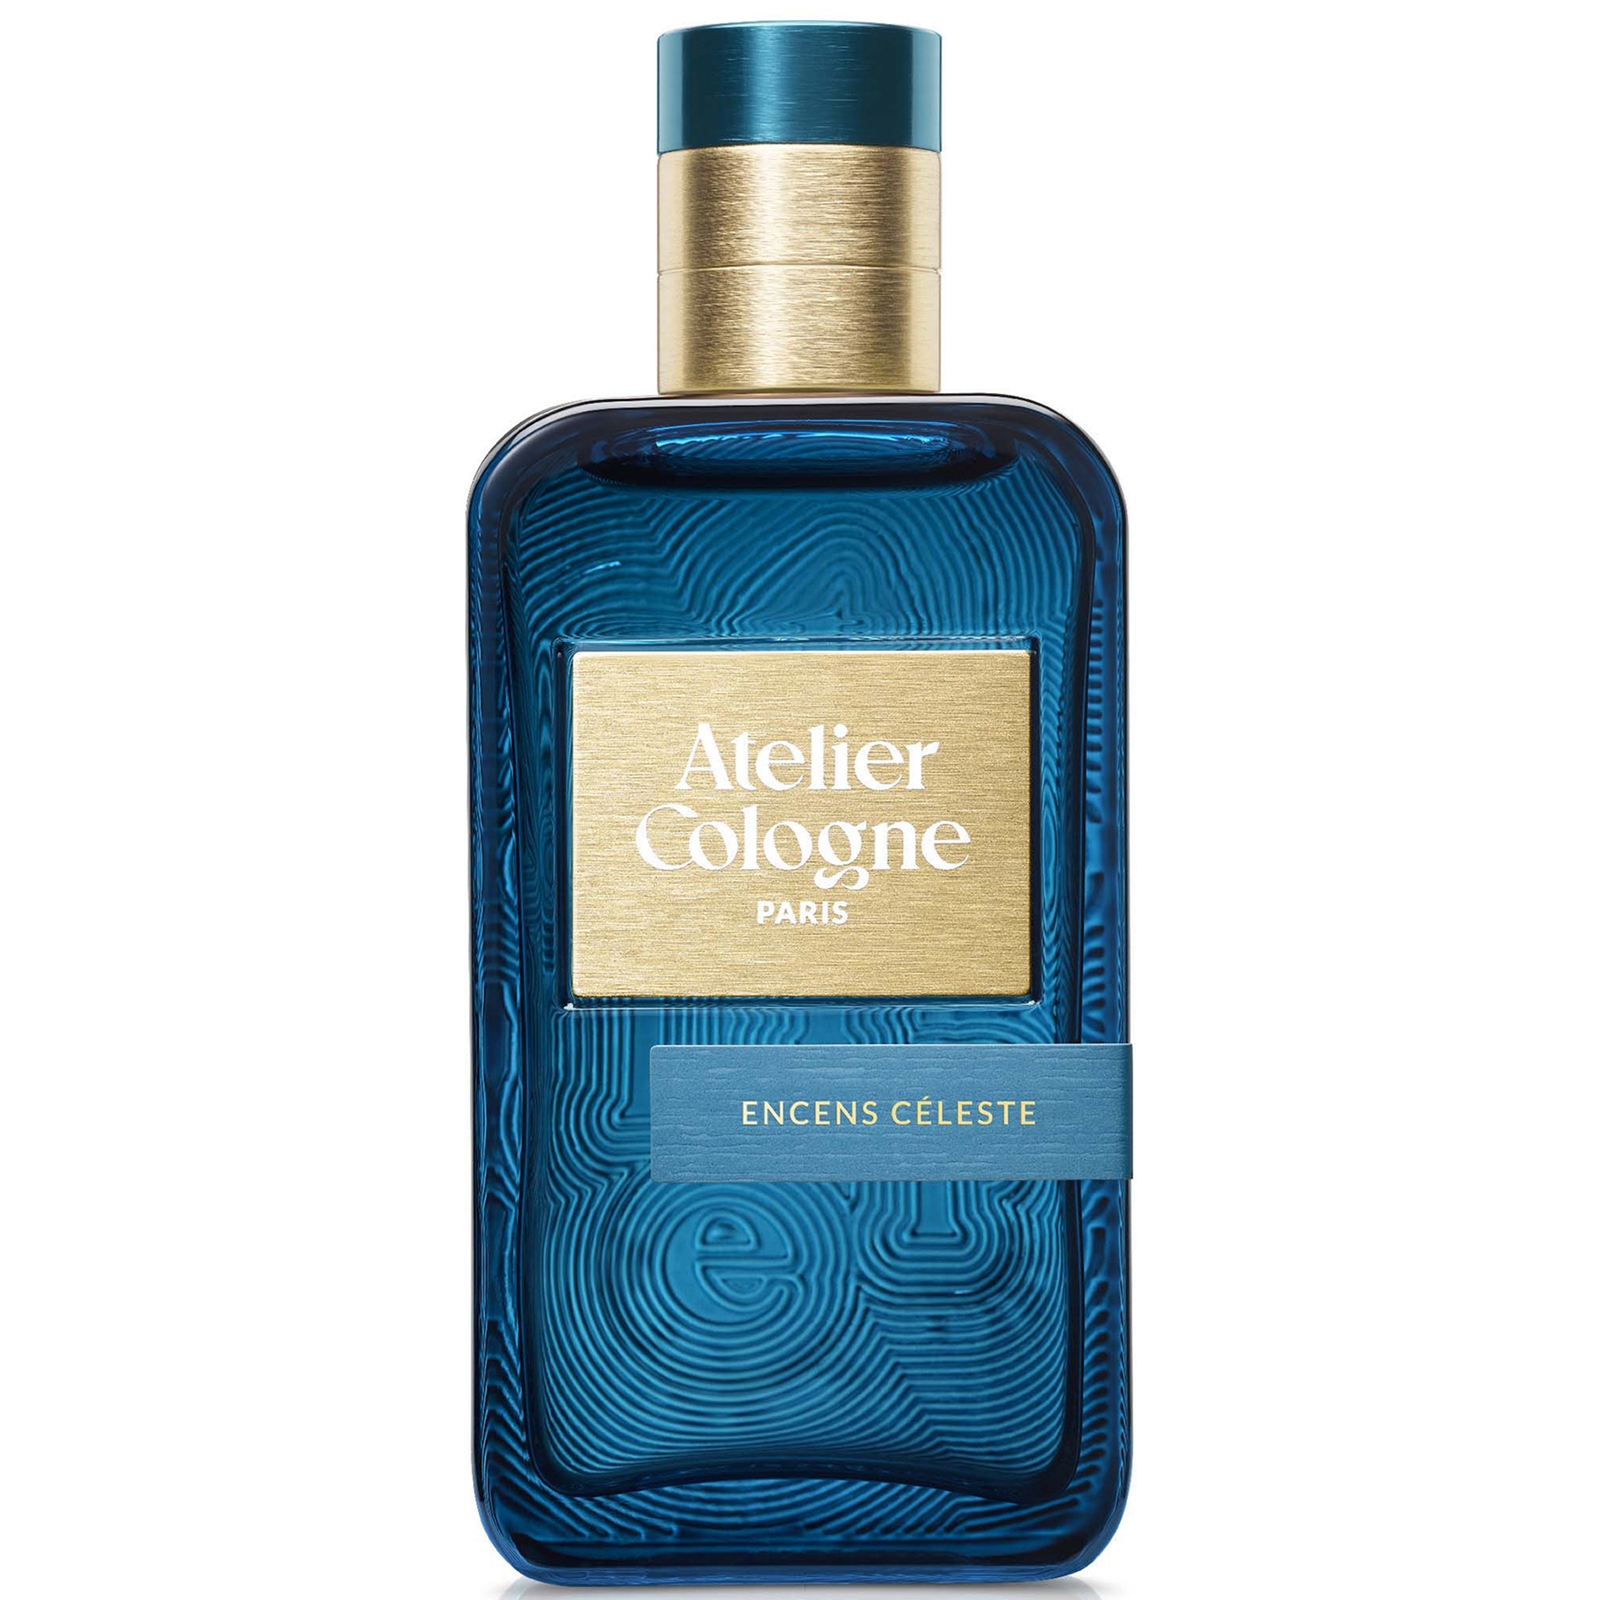 Atelier Cologne Encens Celeste Eau de Parfum 100ml